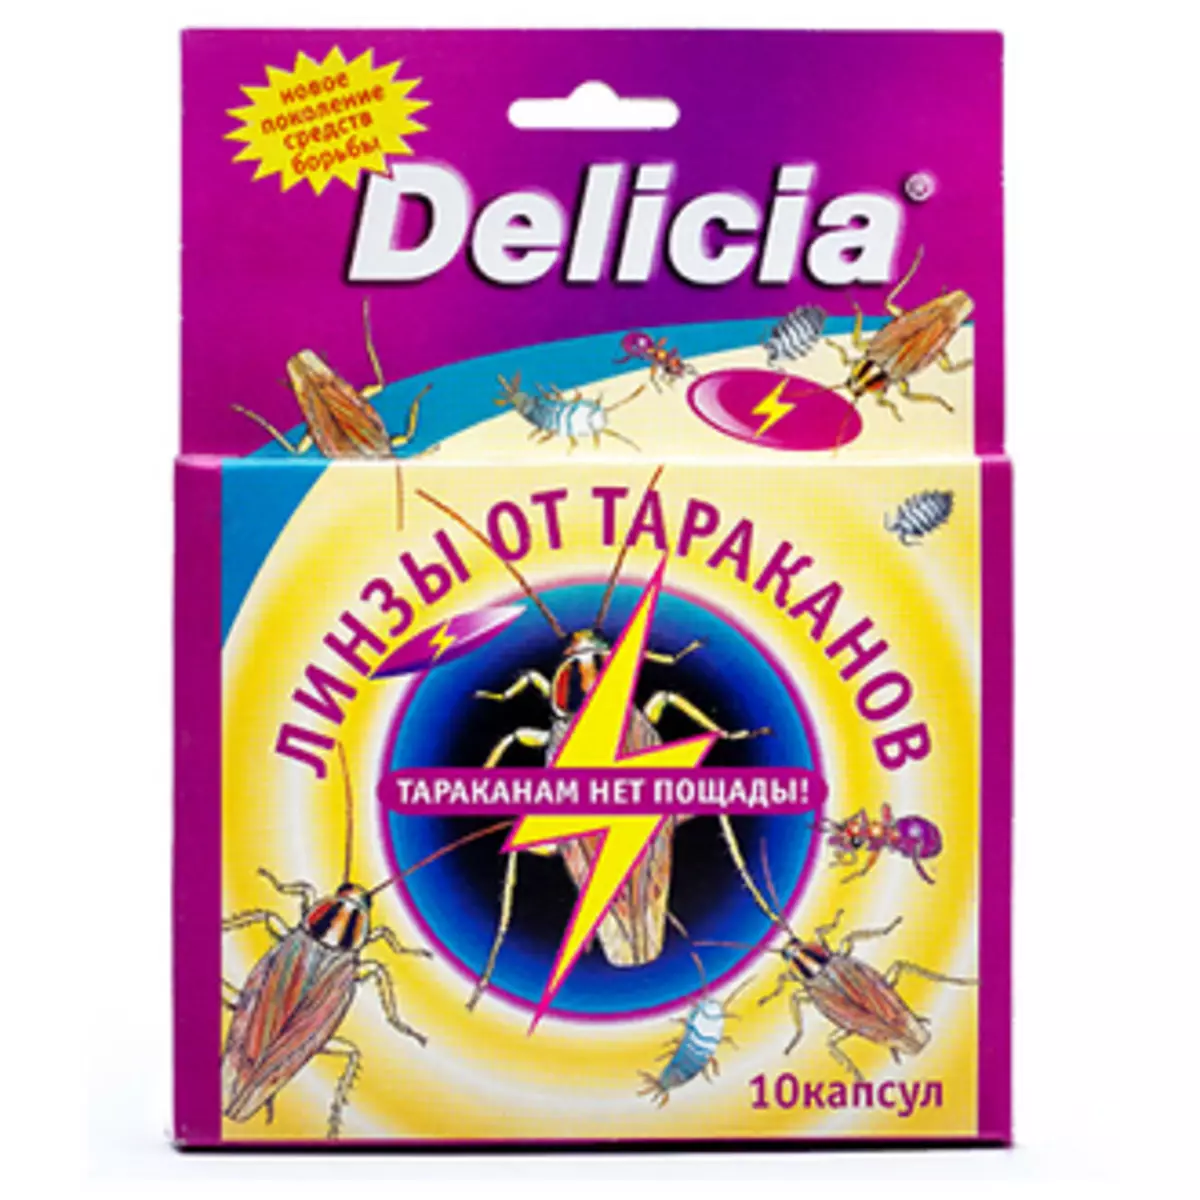 Delicia tablette van kakkerlakke